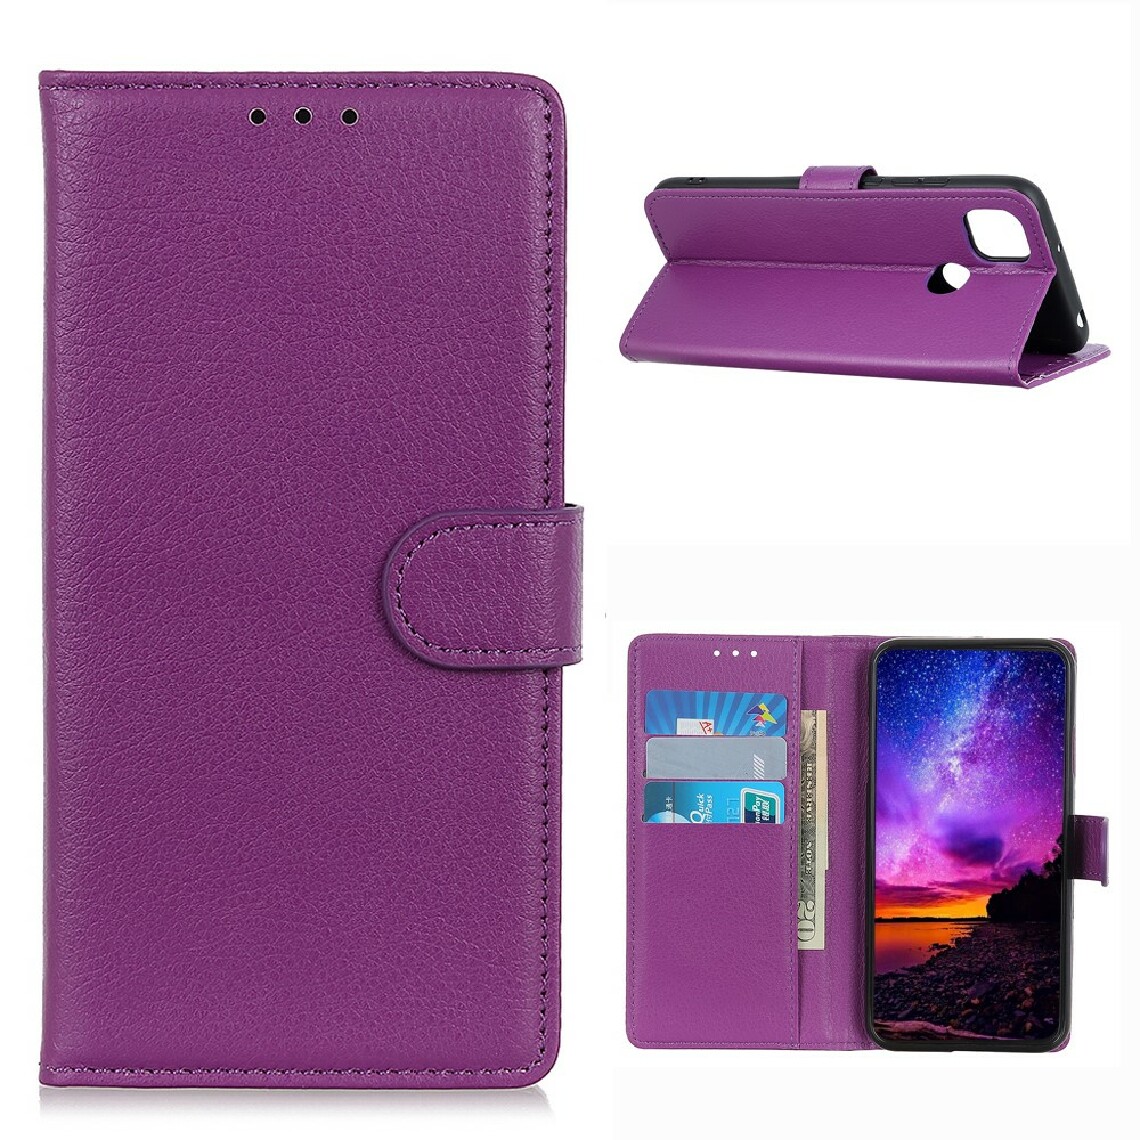 Other - Etui en PU texture de litchi classique violet pour votre Motorola Moto G 5G - Coque, étui smartphone